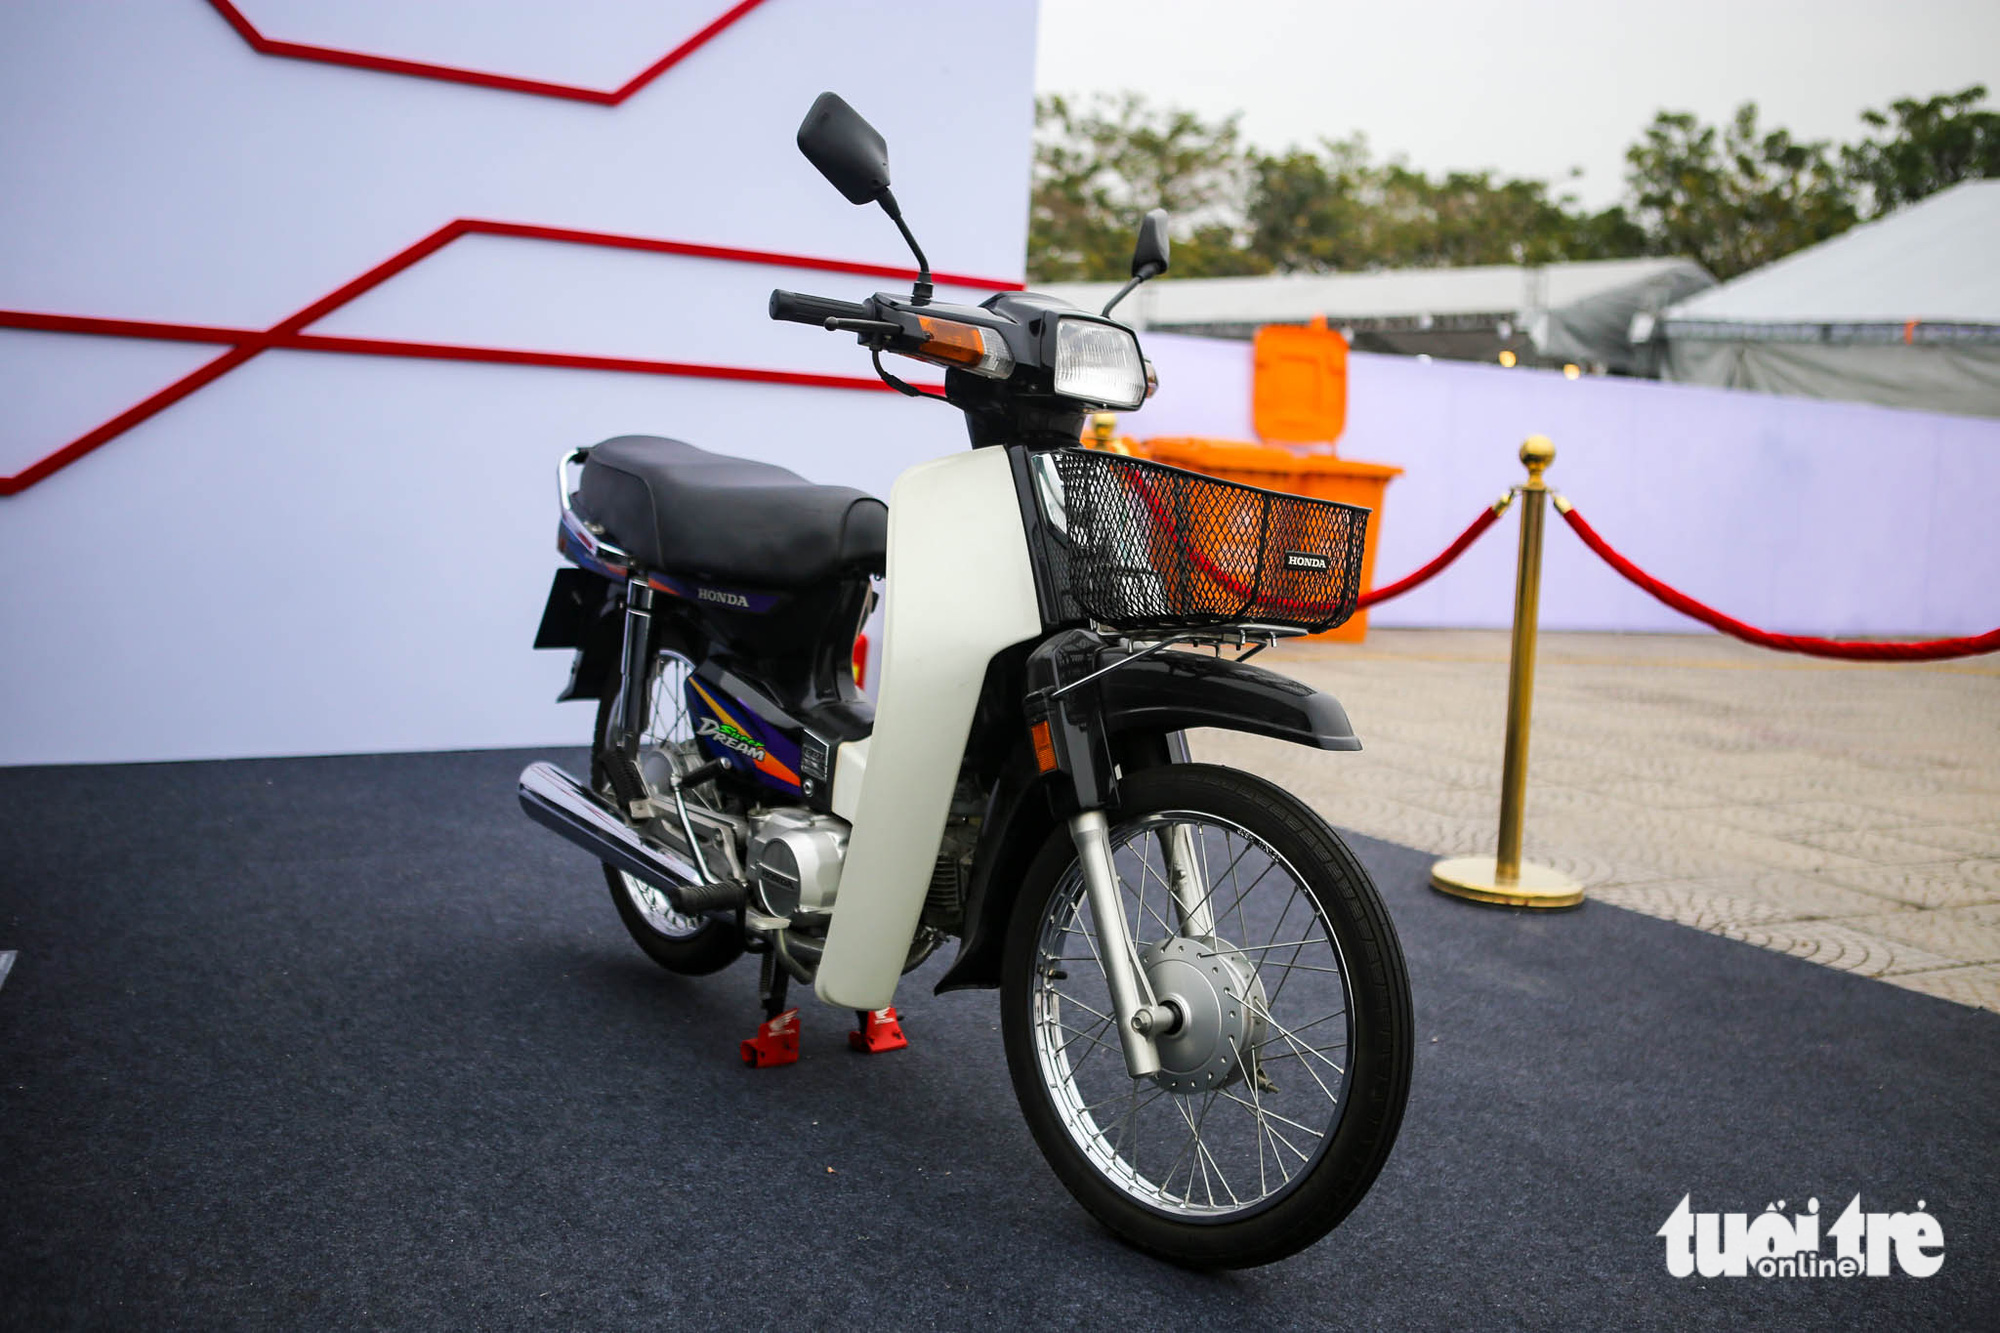 Honda Super Dream  Xe số mang nhiều hồi ức của người Việt